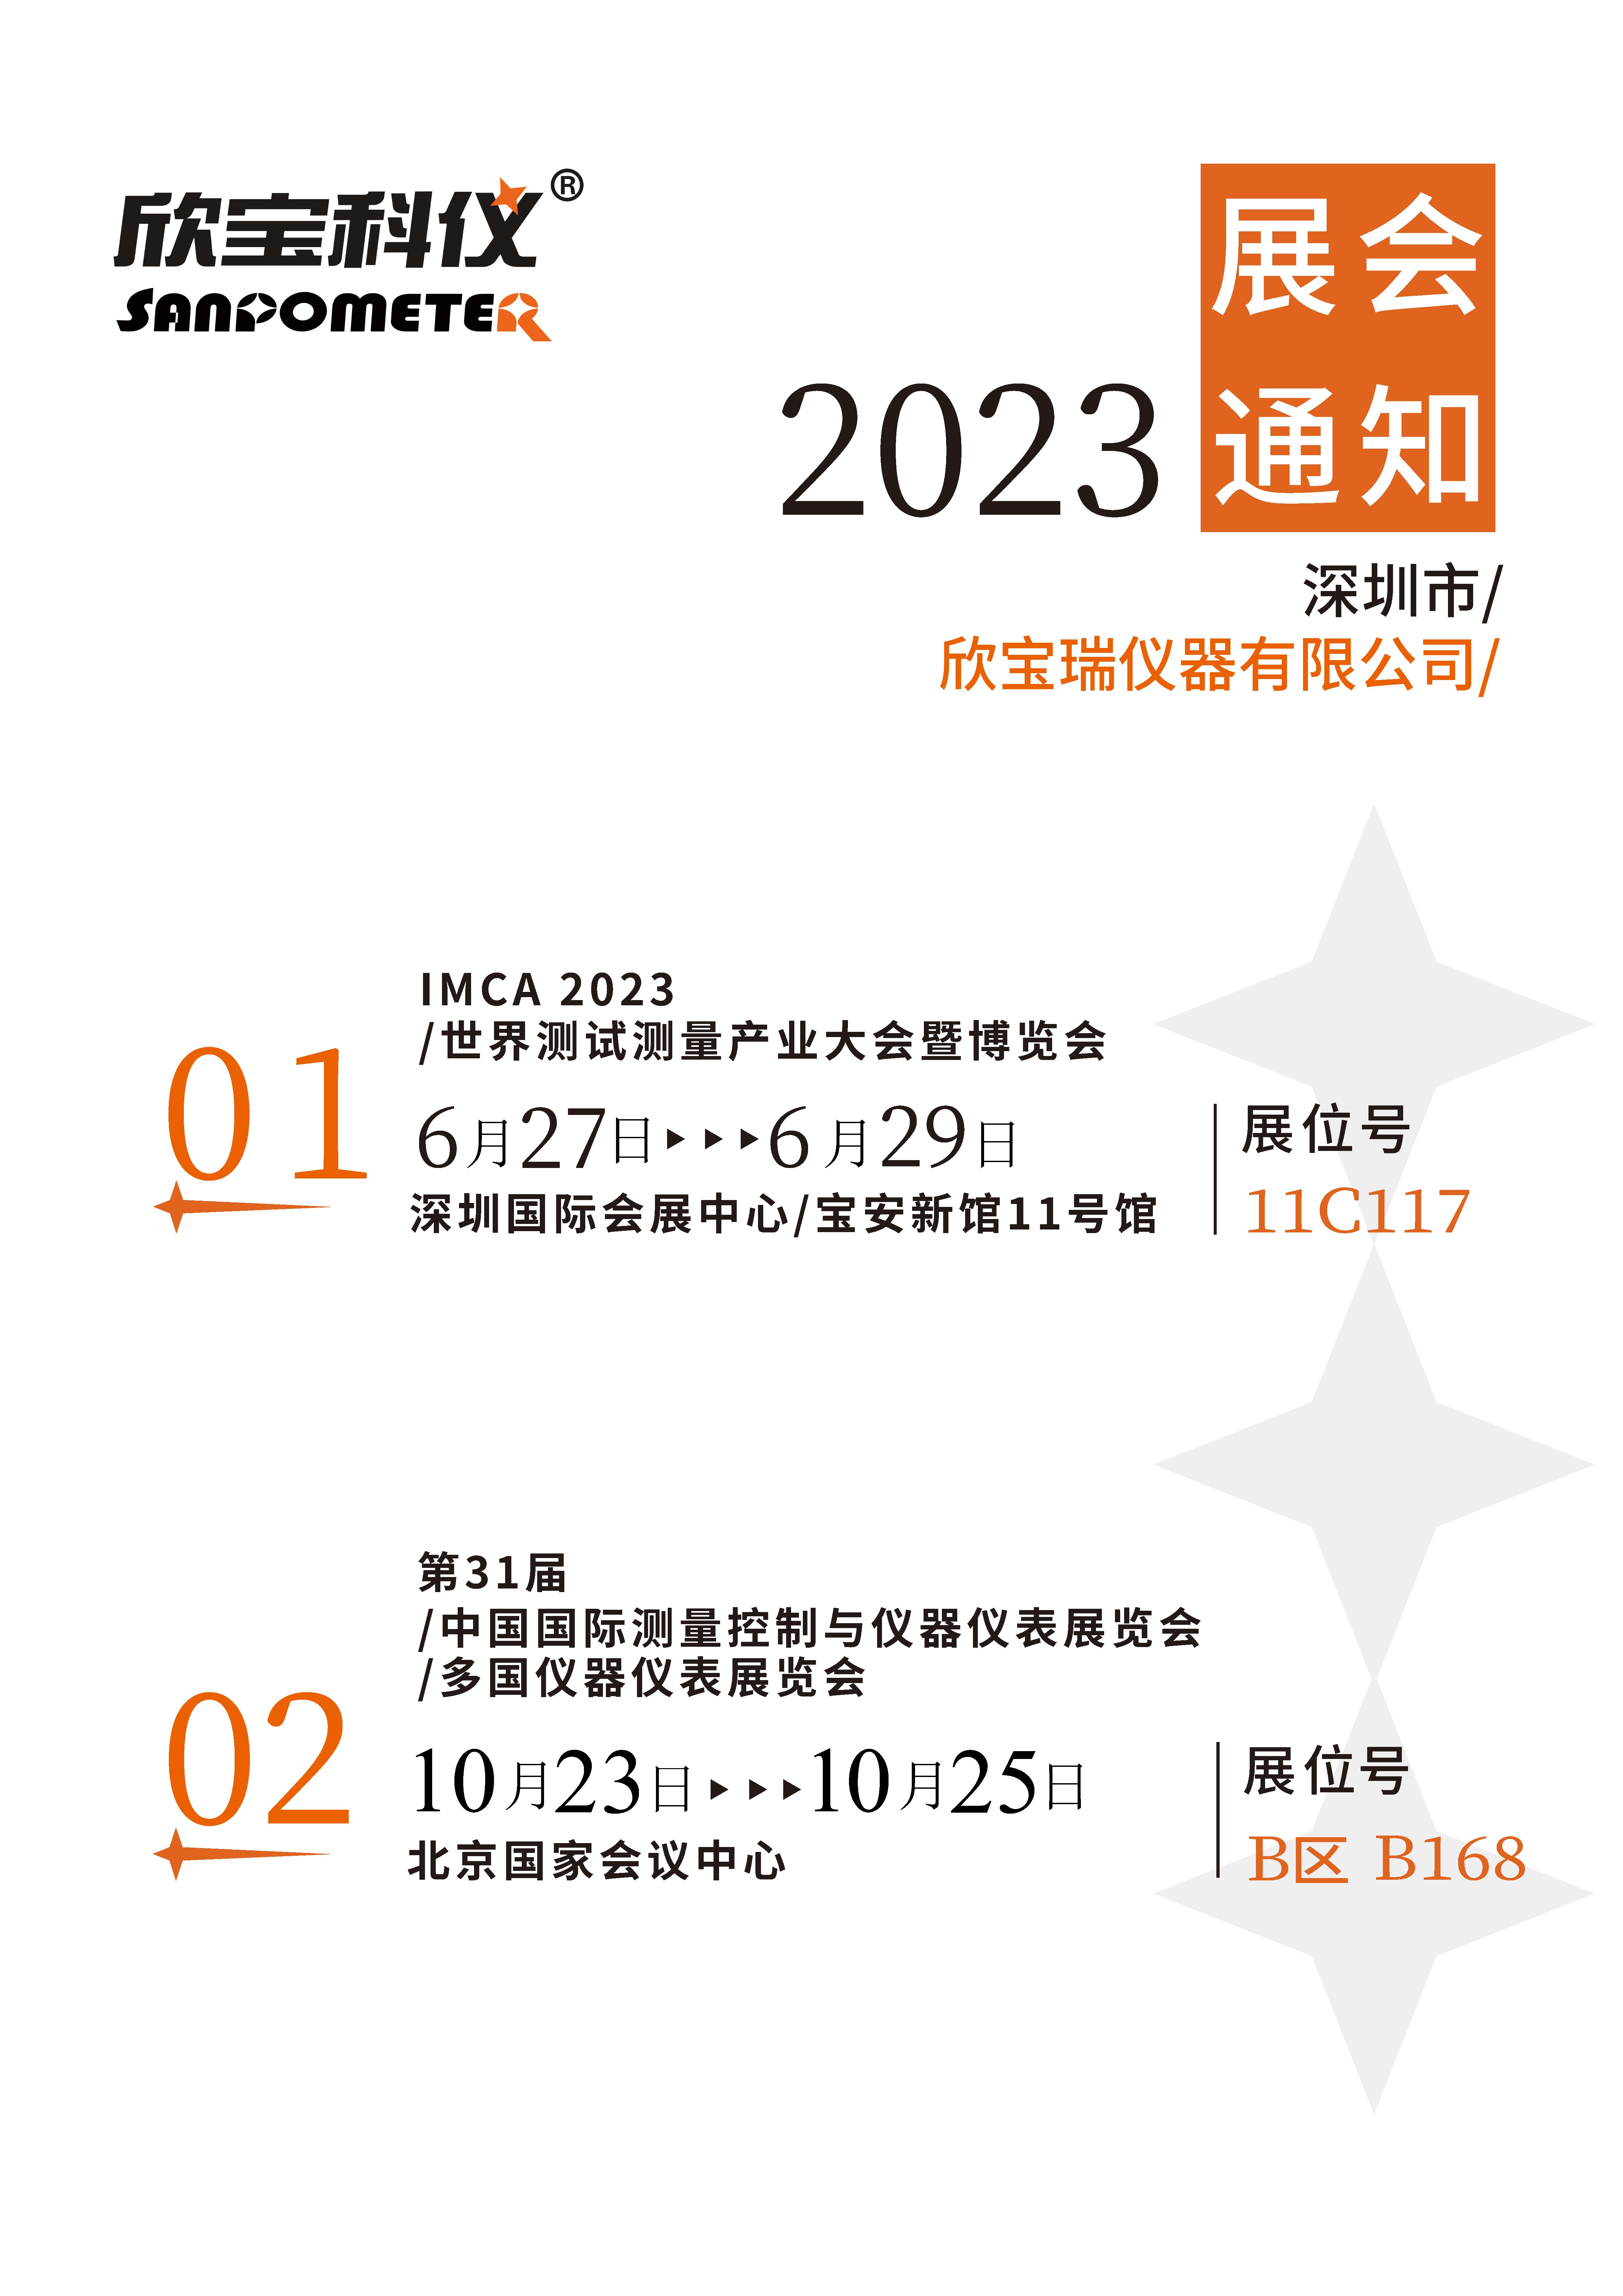 关于本公司2023年所参加展会的通知(图1)